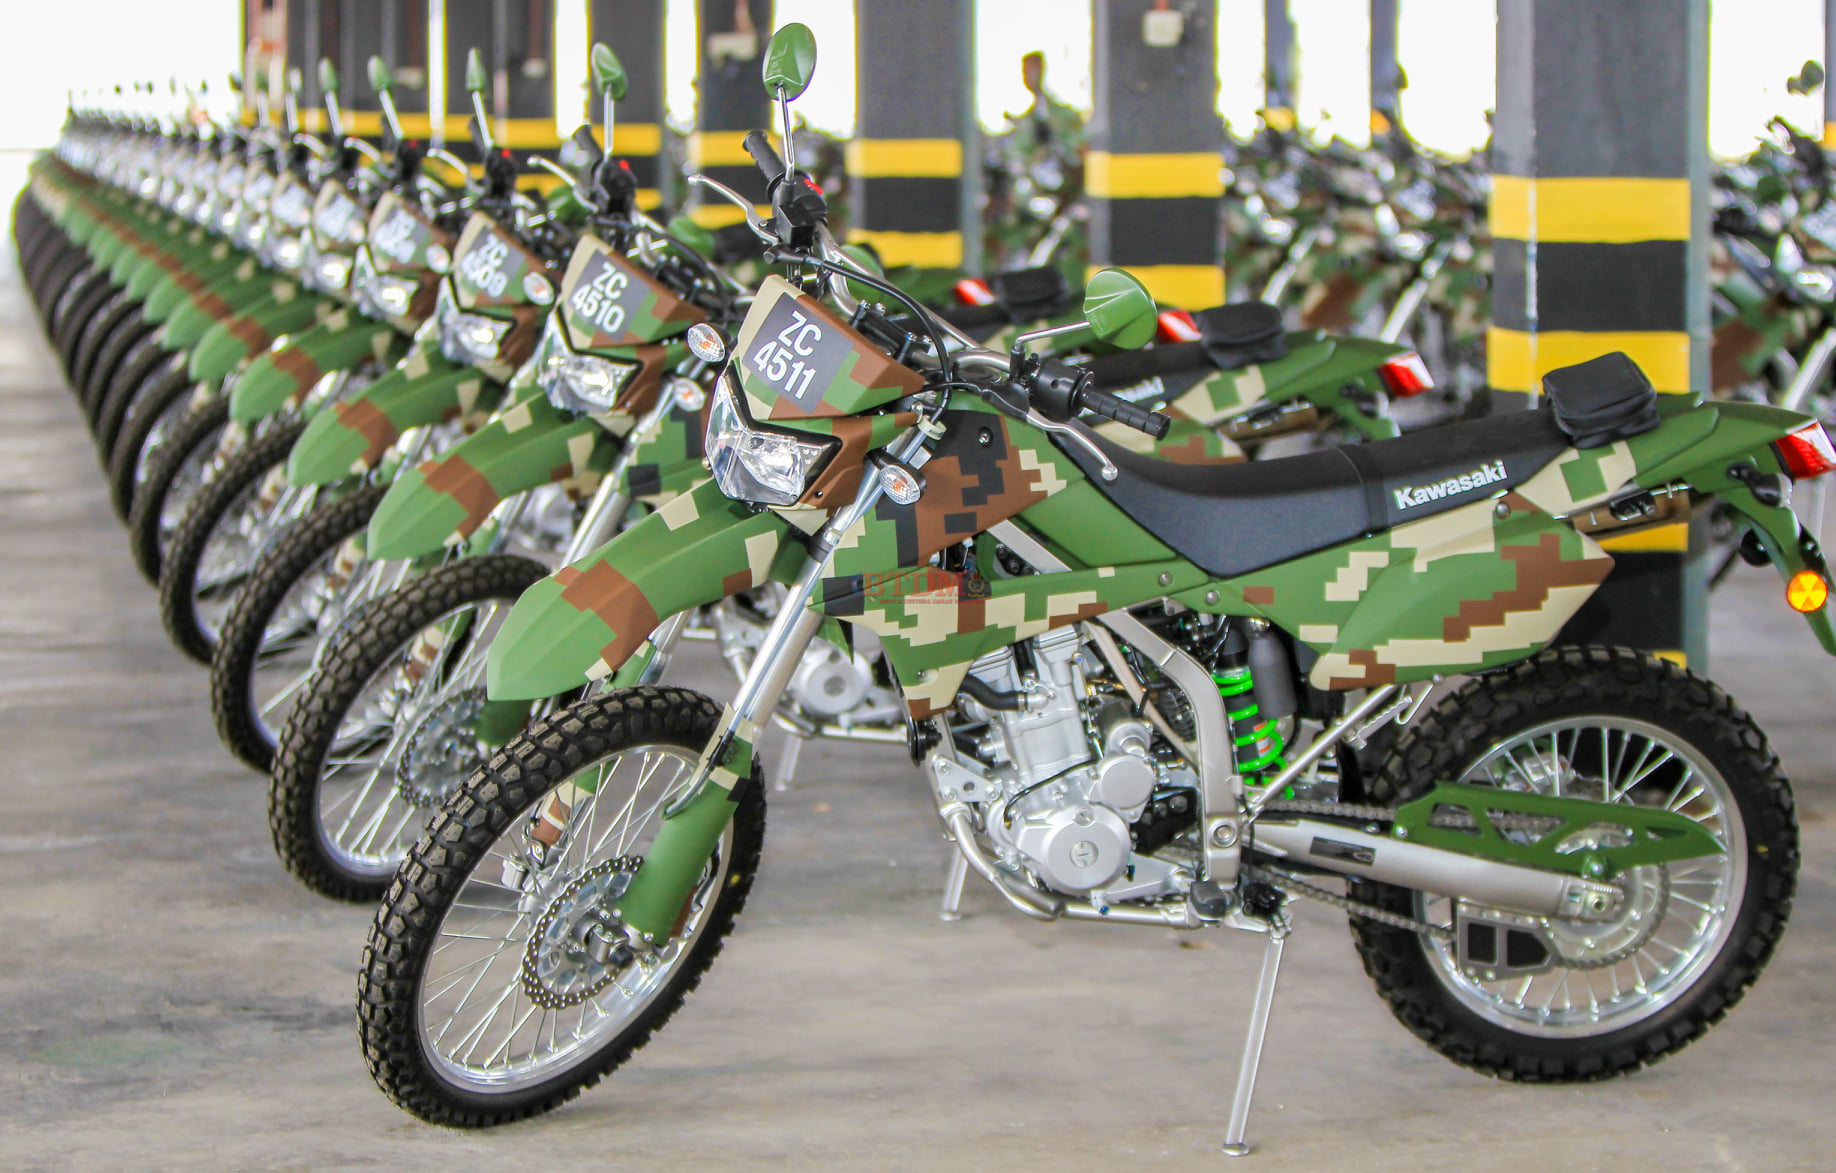 Malaysian Army Receives Units of Kawasaki 250